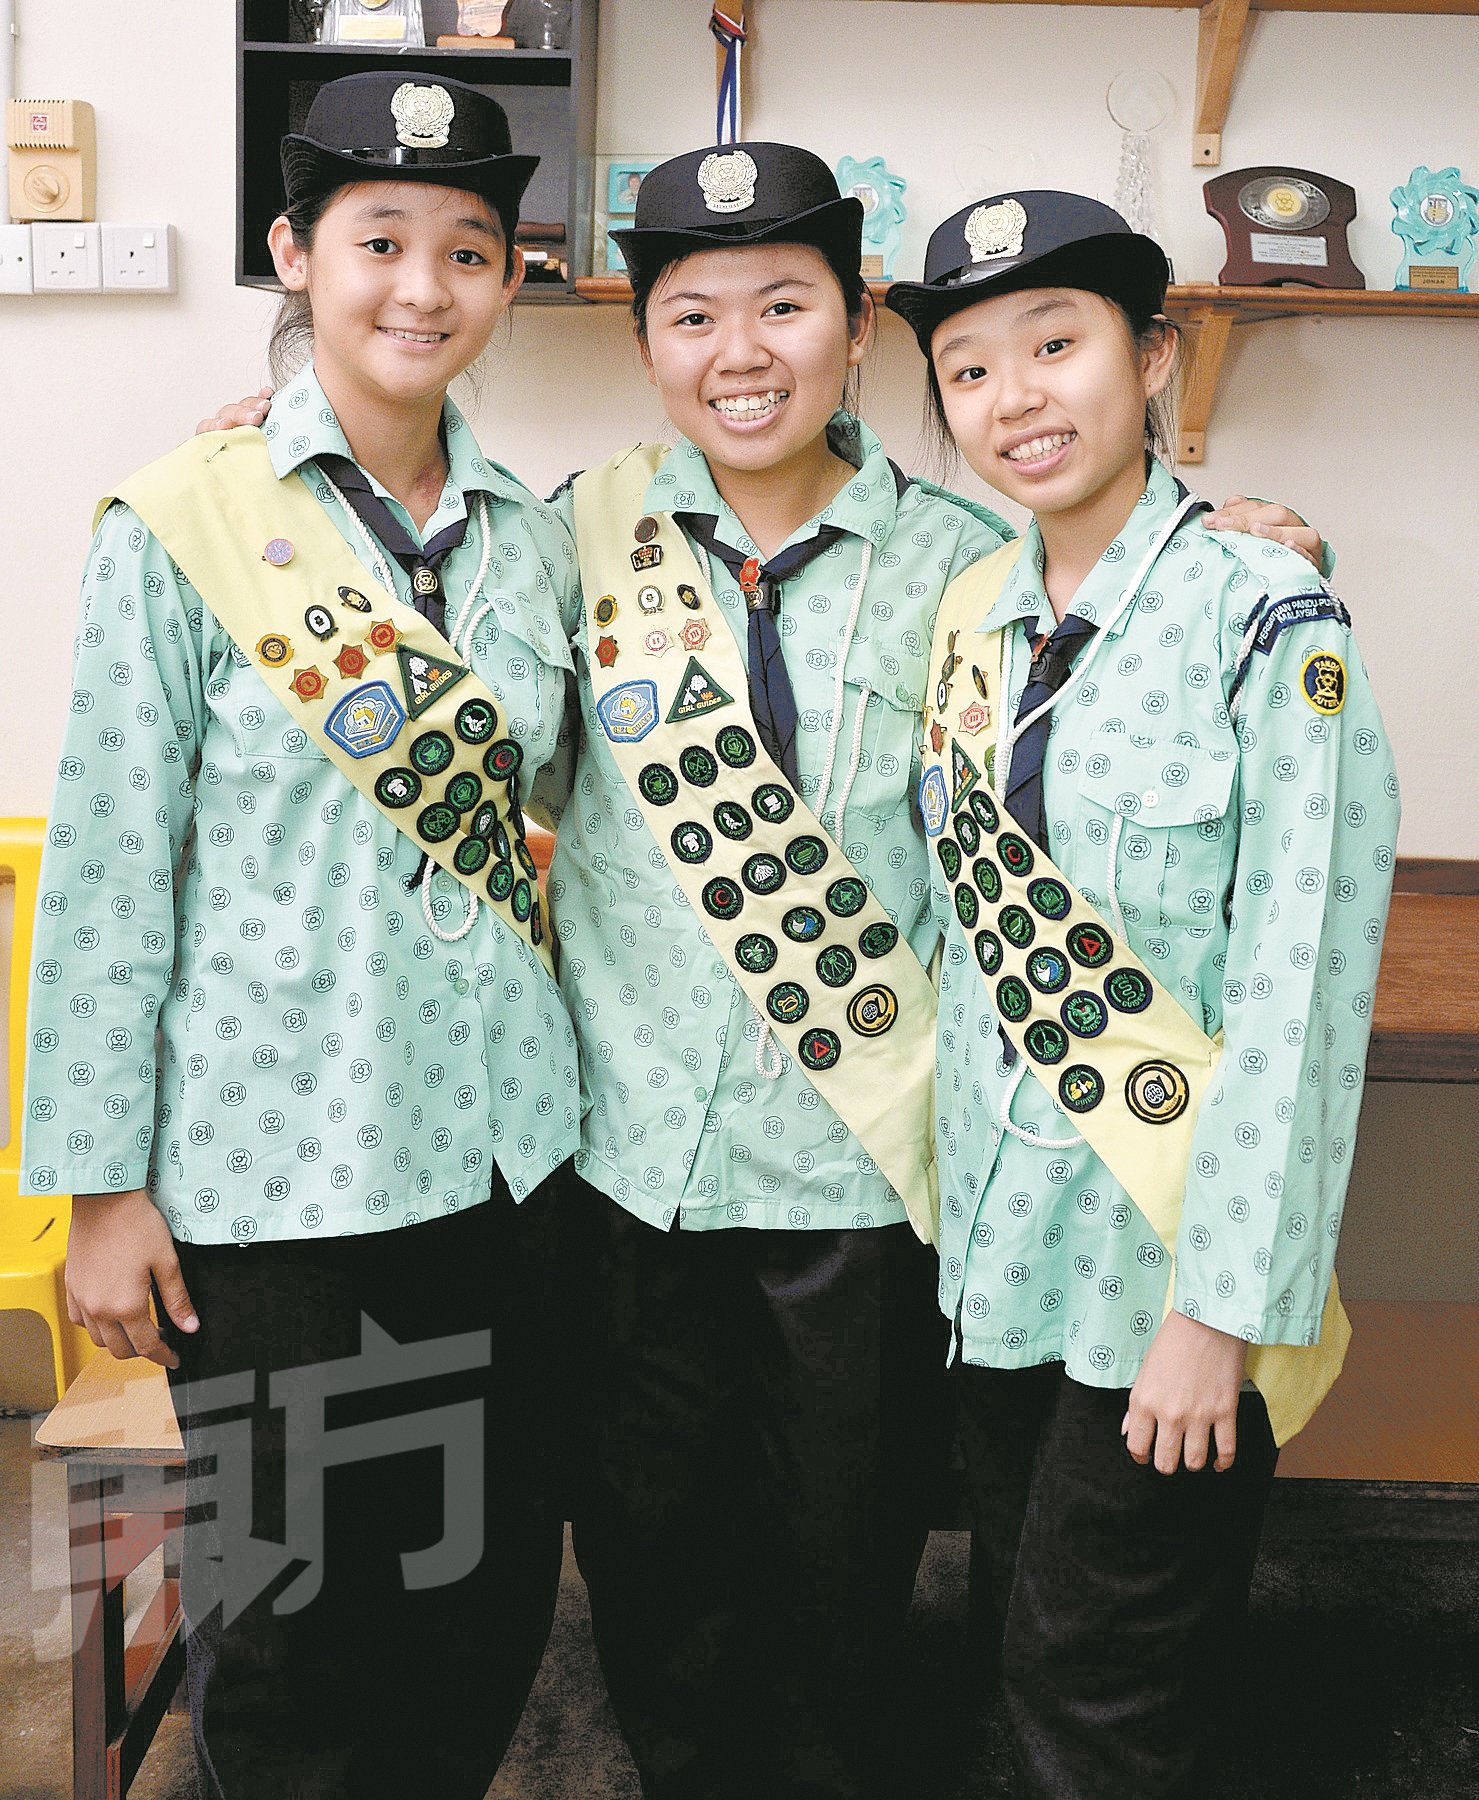 曾佳莹（左起）、李欣儒和陆婉羚在刚开始加入女童军时皆不清楚考取徽章的意义与用处，直到升上中三，渐渐理解其意义后，才慢慢爱上它。三人皆考获皇家女童军勋章。